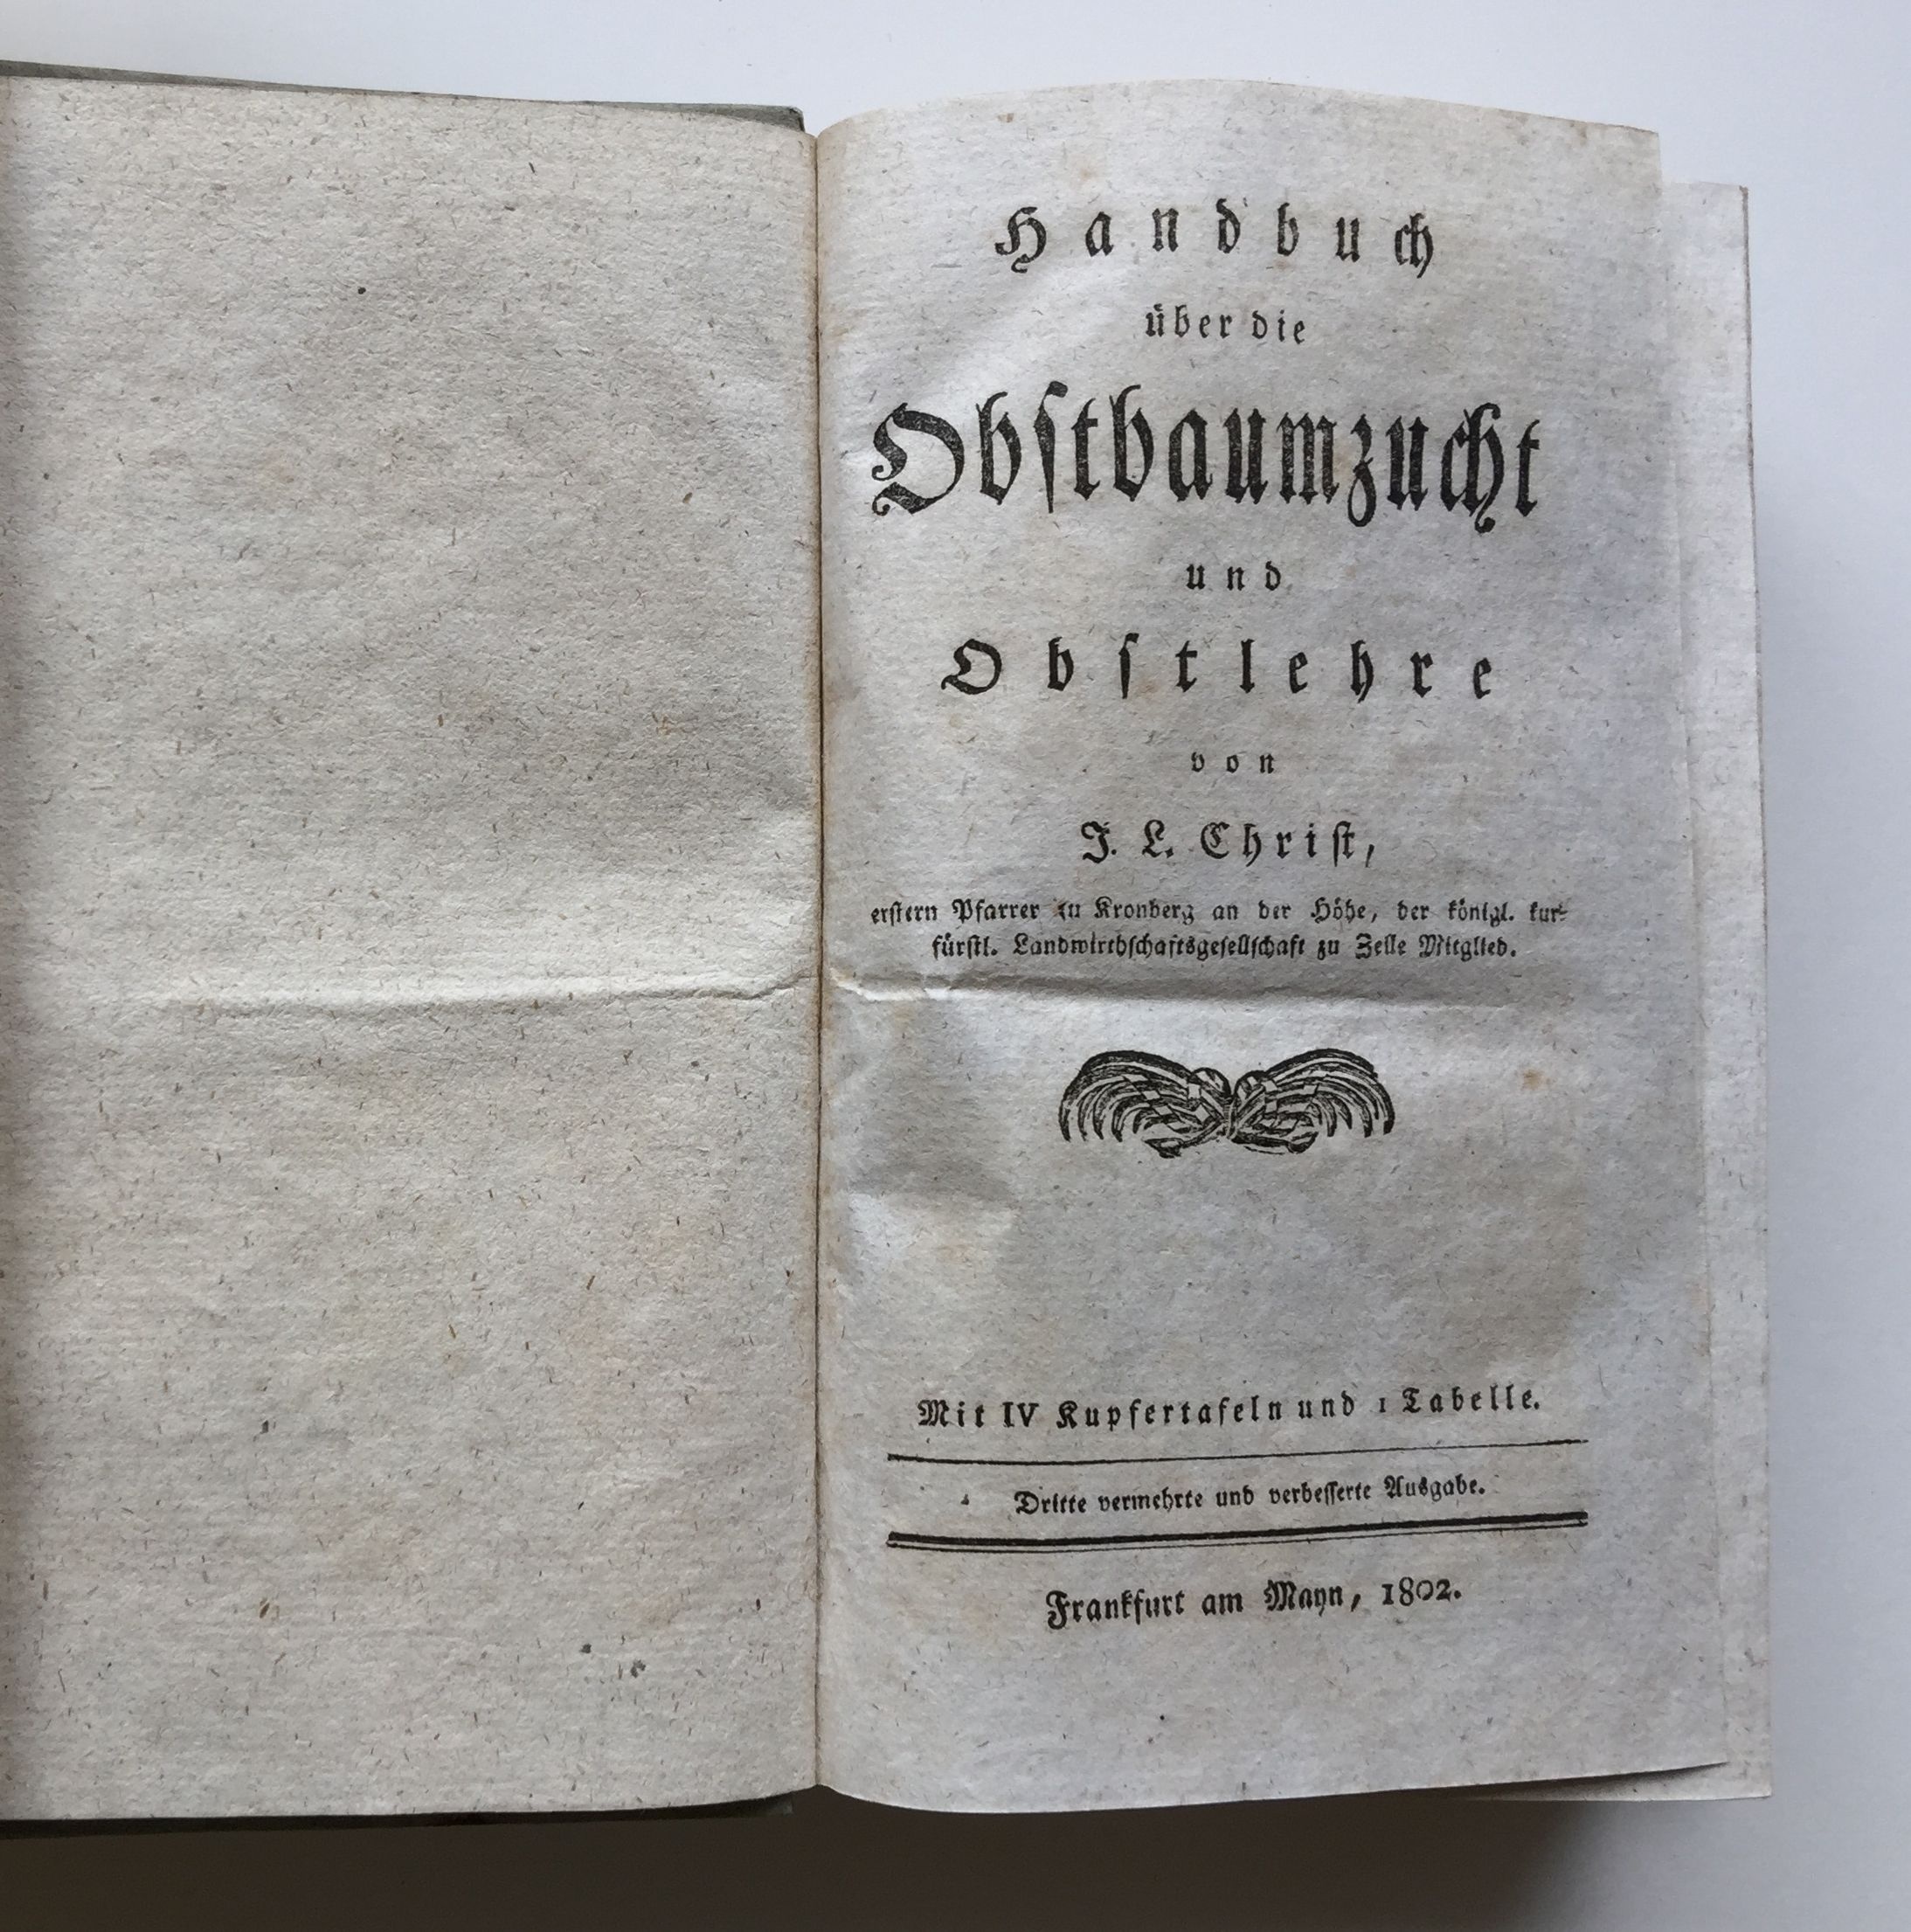 Johann Ludwig Christ, Handbuch über die Obstbaumzucht und Obstlehre, 3. Auflage, 1802 (Taunus-Rhein-Main - Regionalgeschichtliche Sammlung Dr. Stefan Naas CC BY-NC-SA)